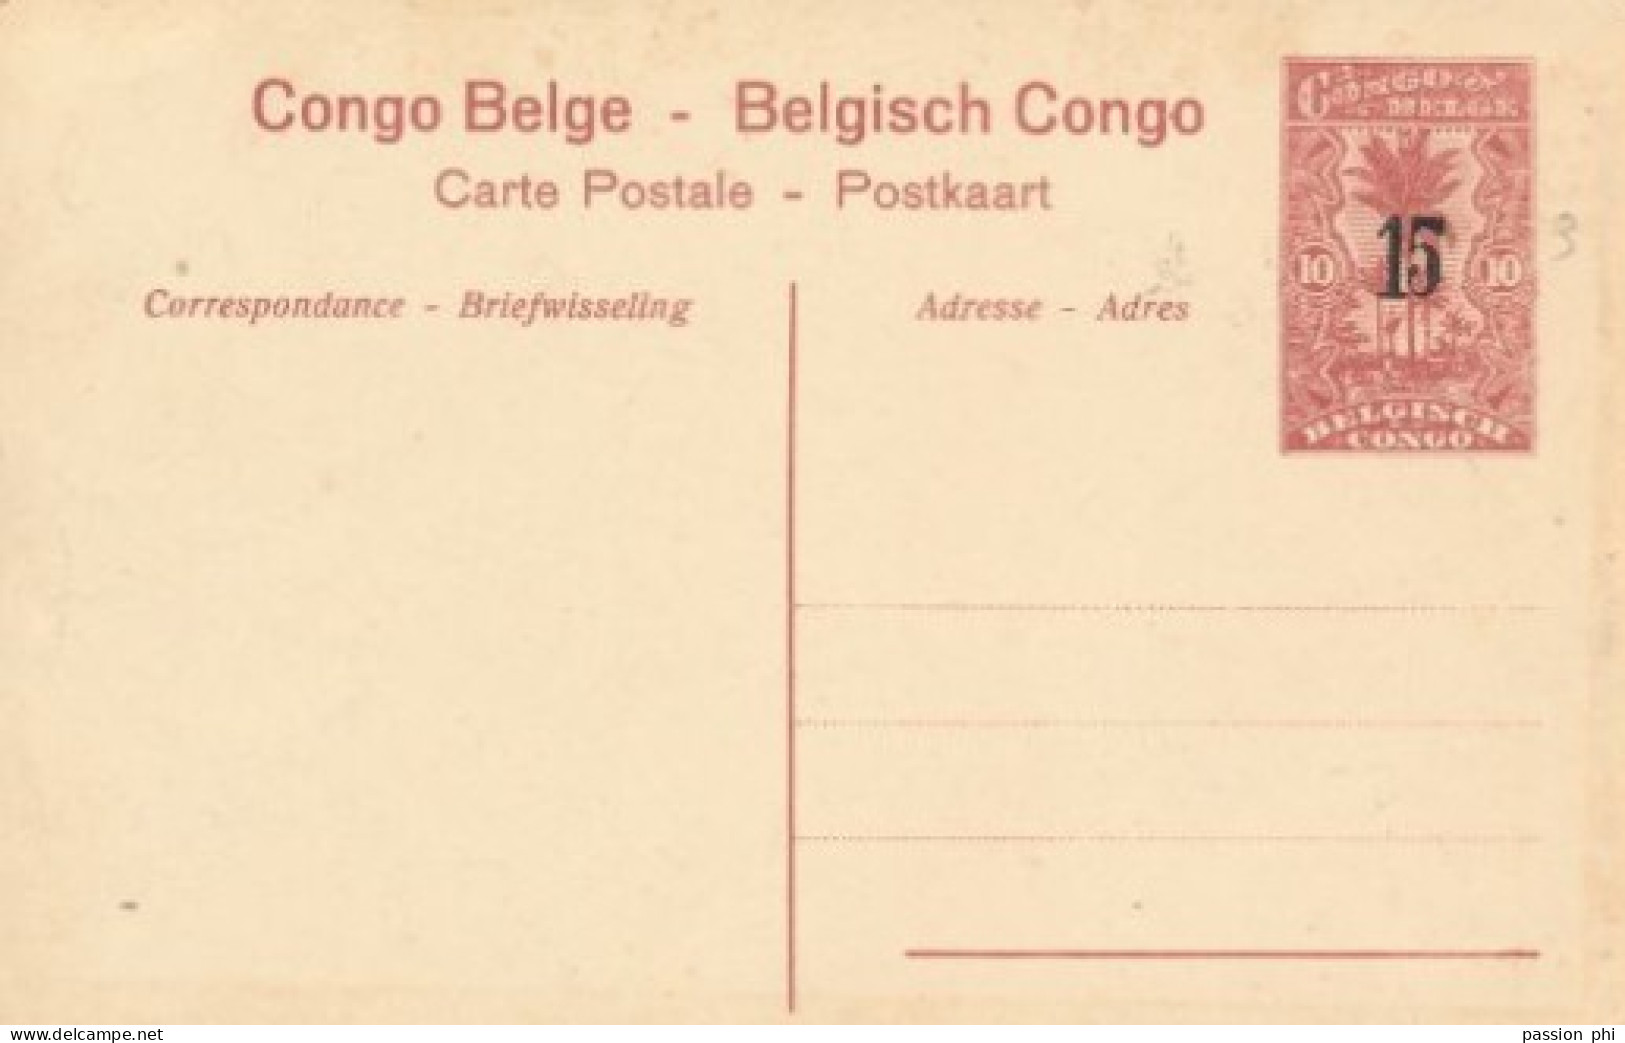 BELGIAN CONGO PPS SBEP 53 VIEW 17 UNUSED - Interi Postali